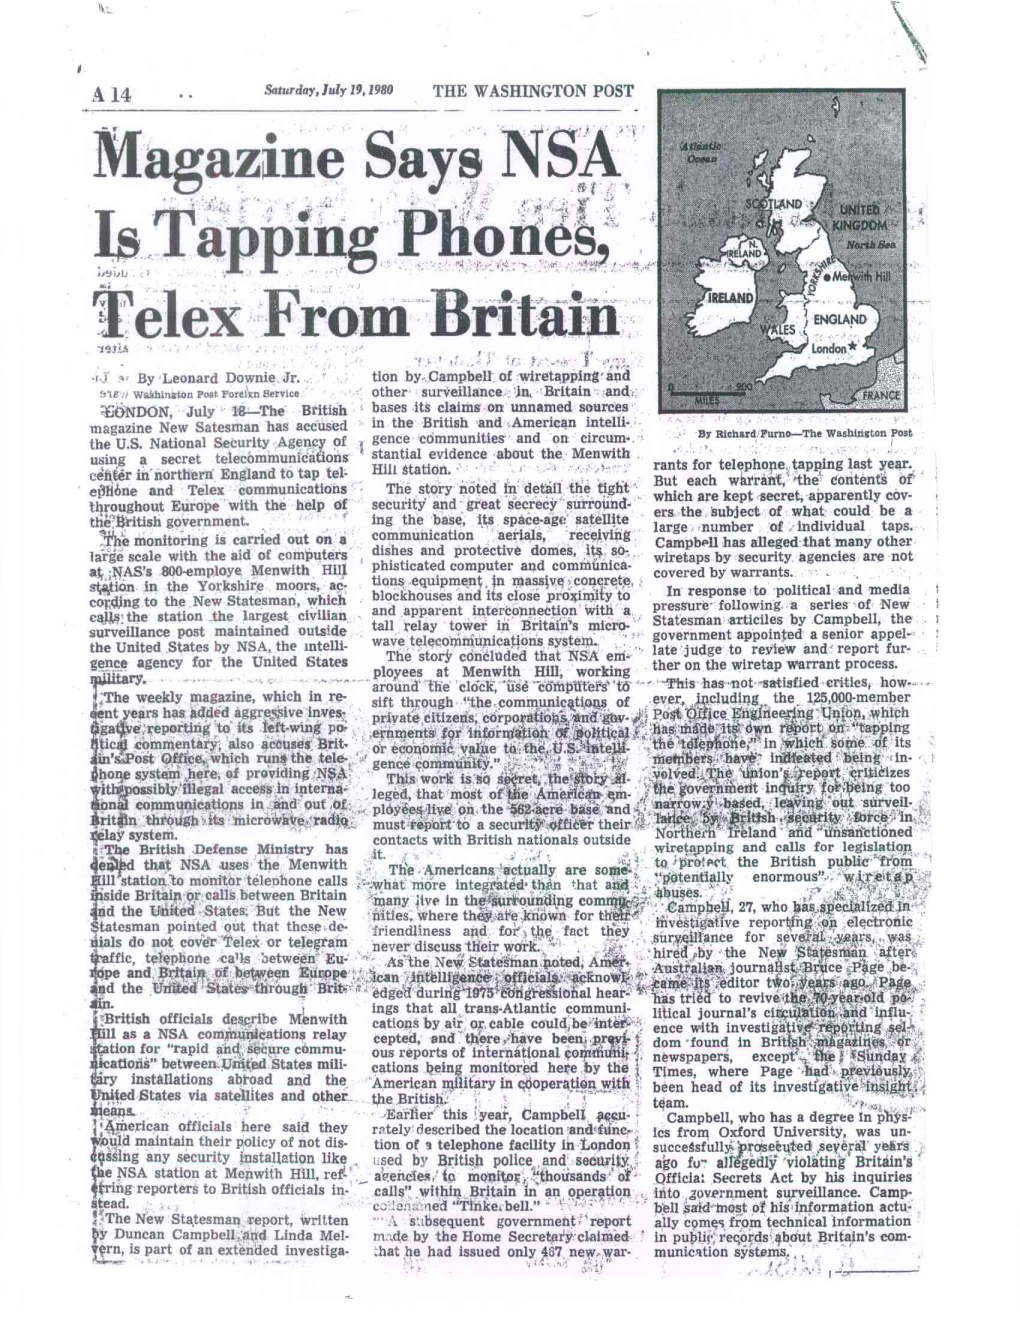 Magazine Says NSA Is Tappiiiig Phones Telex from Britaiii